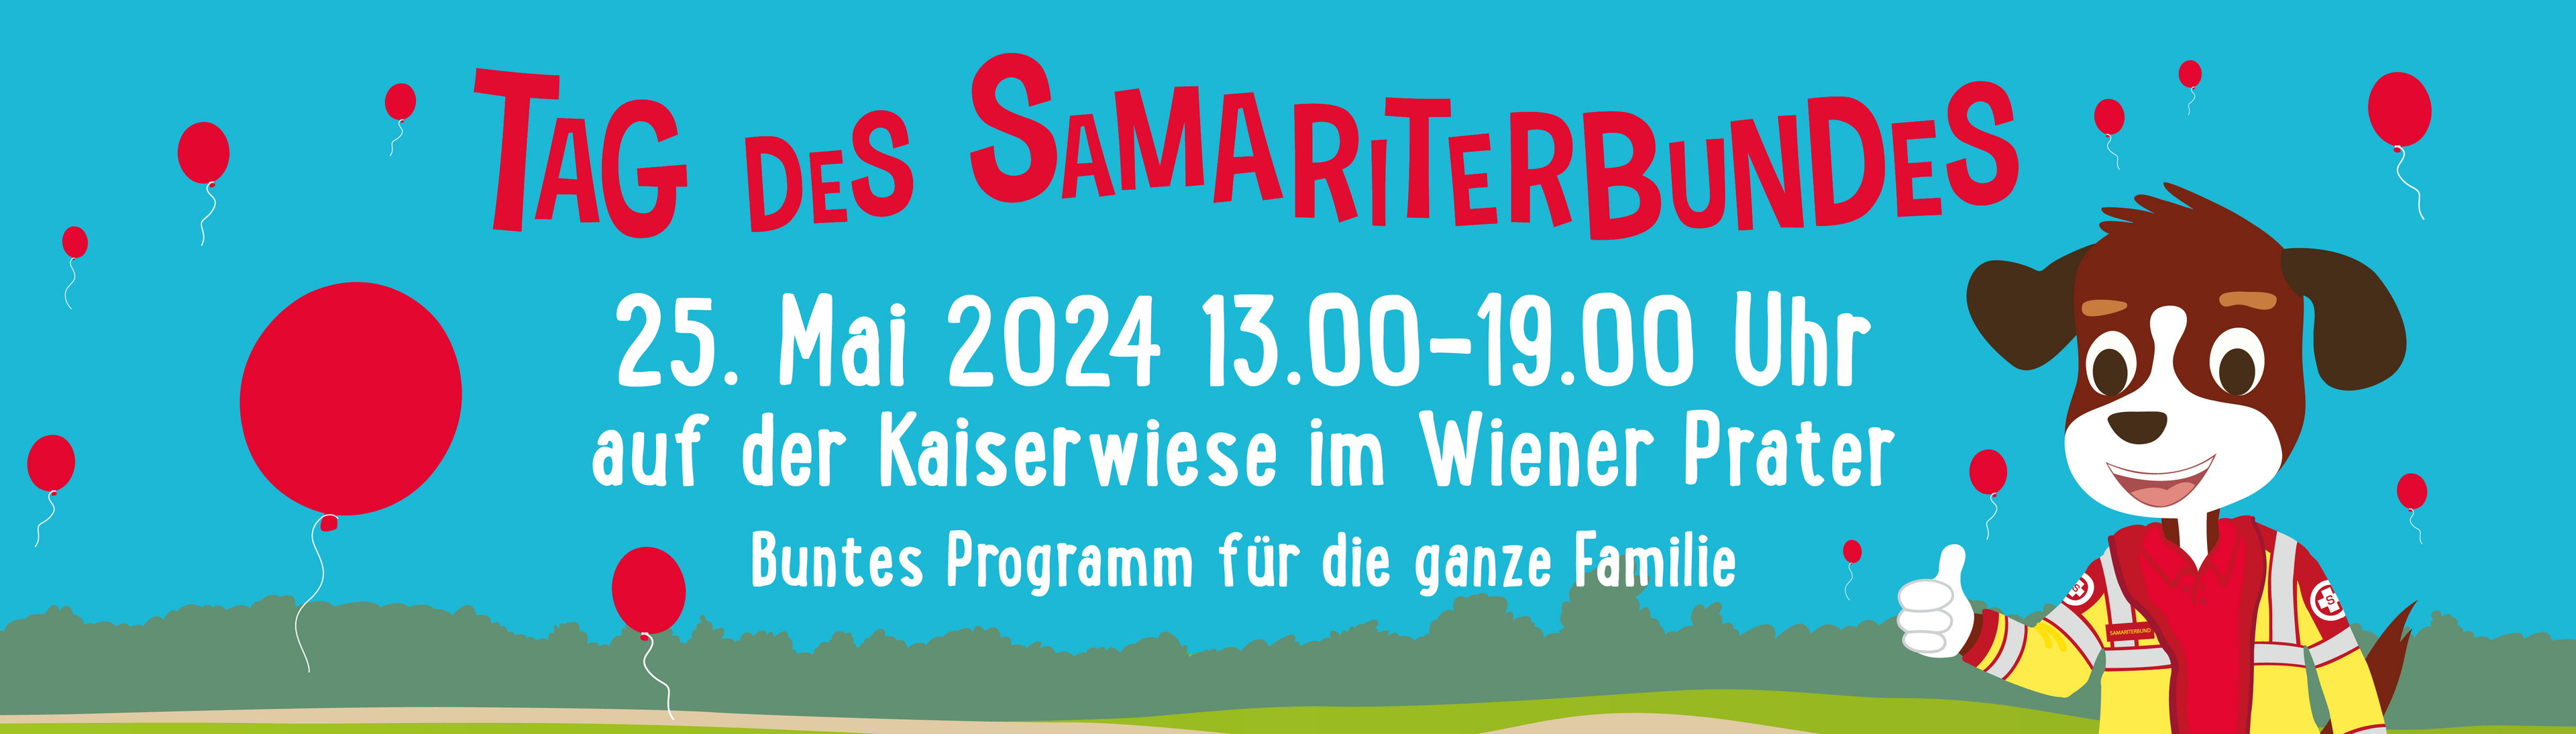 Tag des Samariterbundes - alle Details zur Veranstaltung auf blauem Hintergrund mit Luftballon und Hund Sam